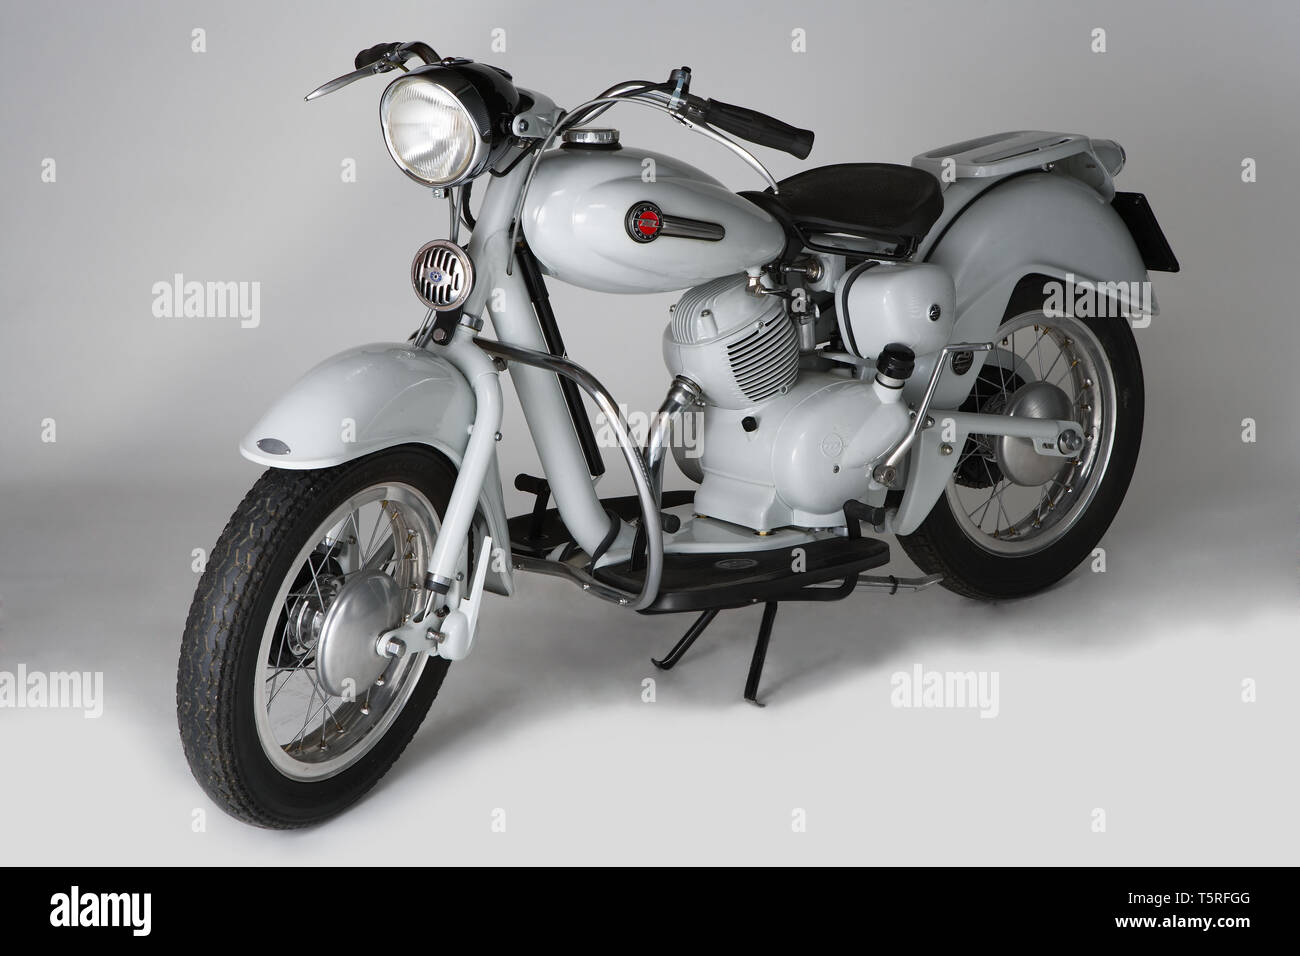 Moto d'epoca (scooter) Motom Delfino.  Marca: Motom modello: Delfino nazione: Italia anno: 1954 condizioni: restaurato cilindrata: 163 Stock Photo